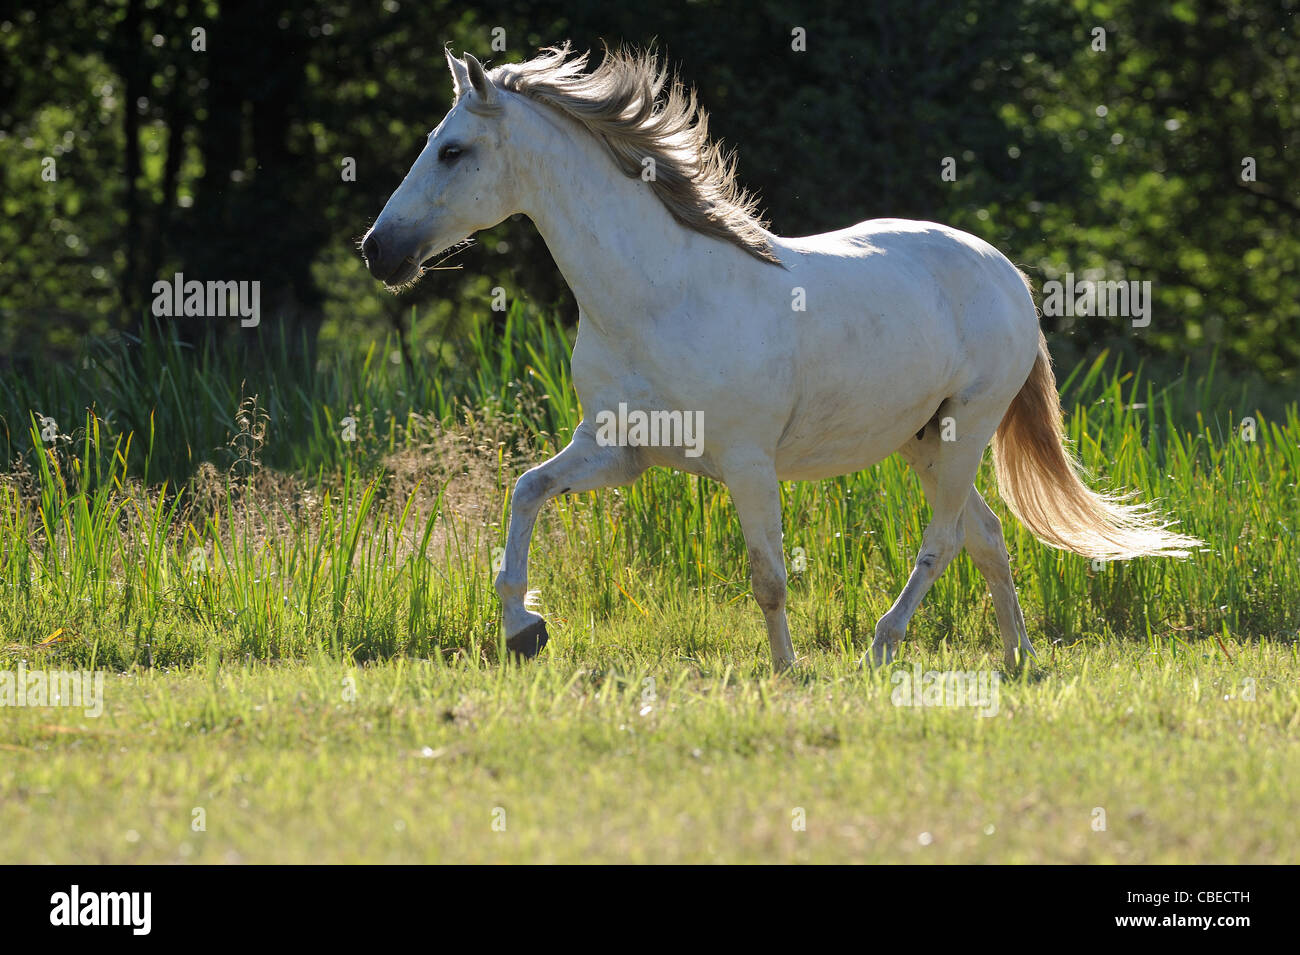 Andalusische Pferd (Equus Ferus Caballus). Graue Stute im Trab auf einer Wiese. Stockfoto